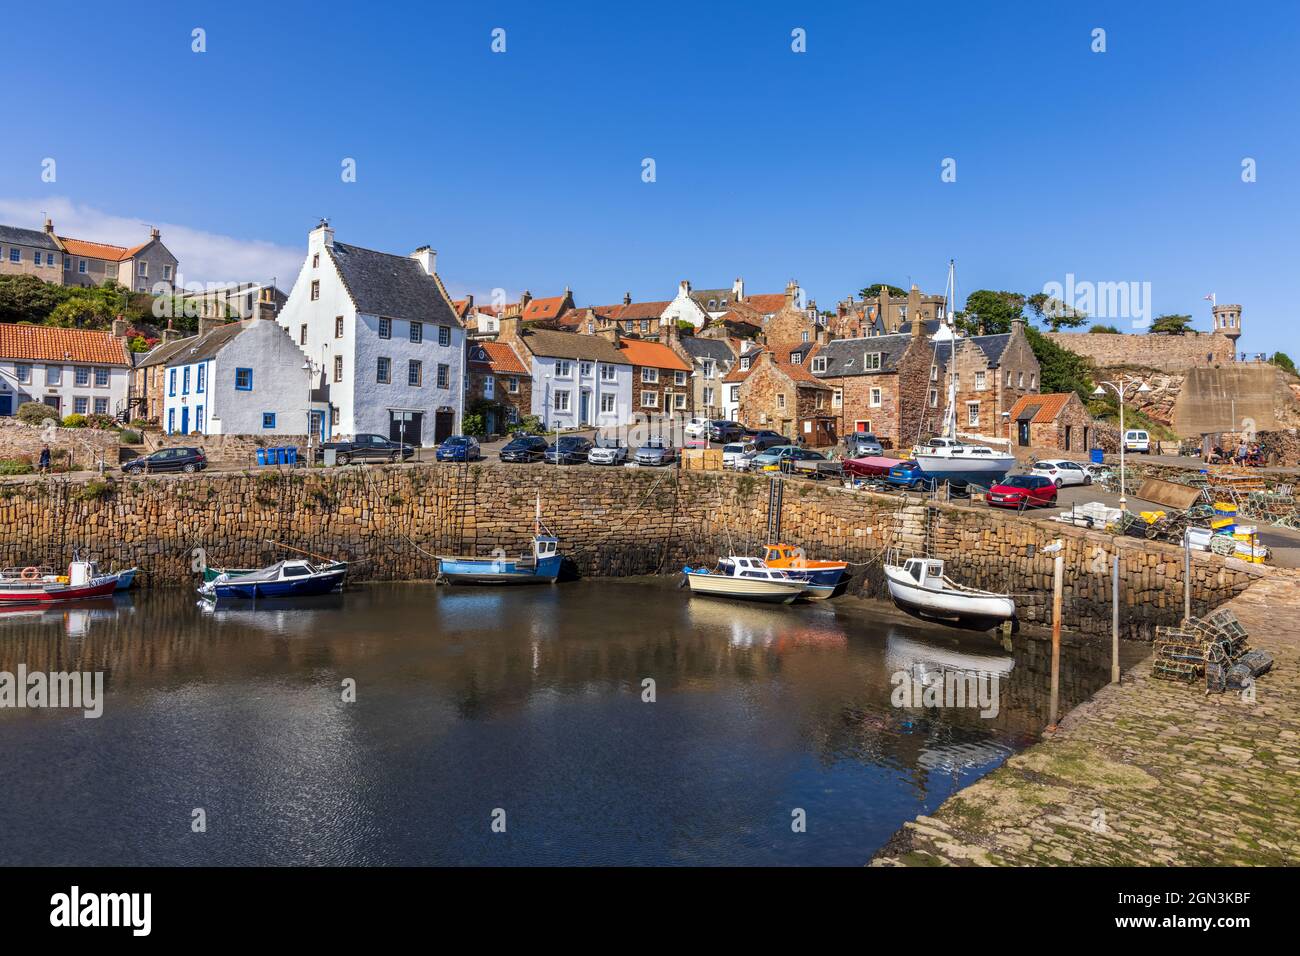 Lo storico villaggio di pescatori di Crail, con il suo pittoresco porto e le colorate barche da pesca, sulla costa orientale di Fife, Scozia. Foto Stock